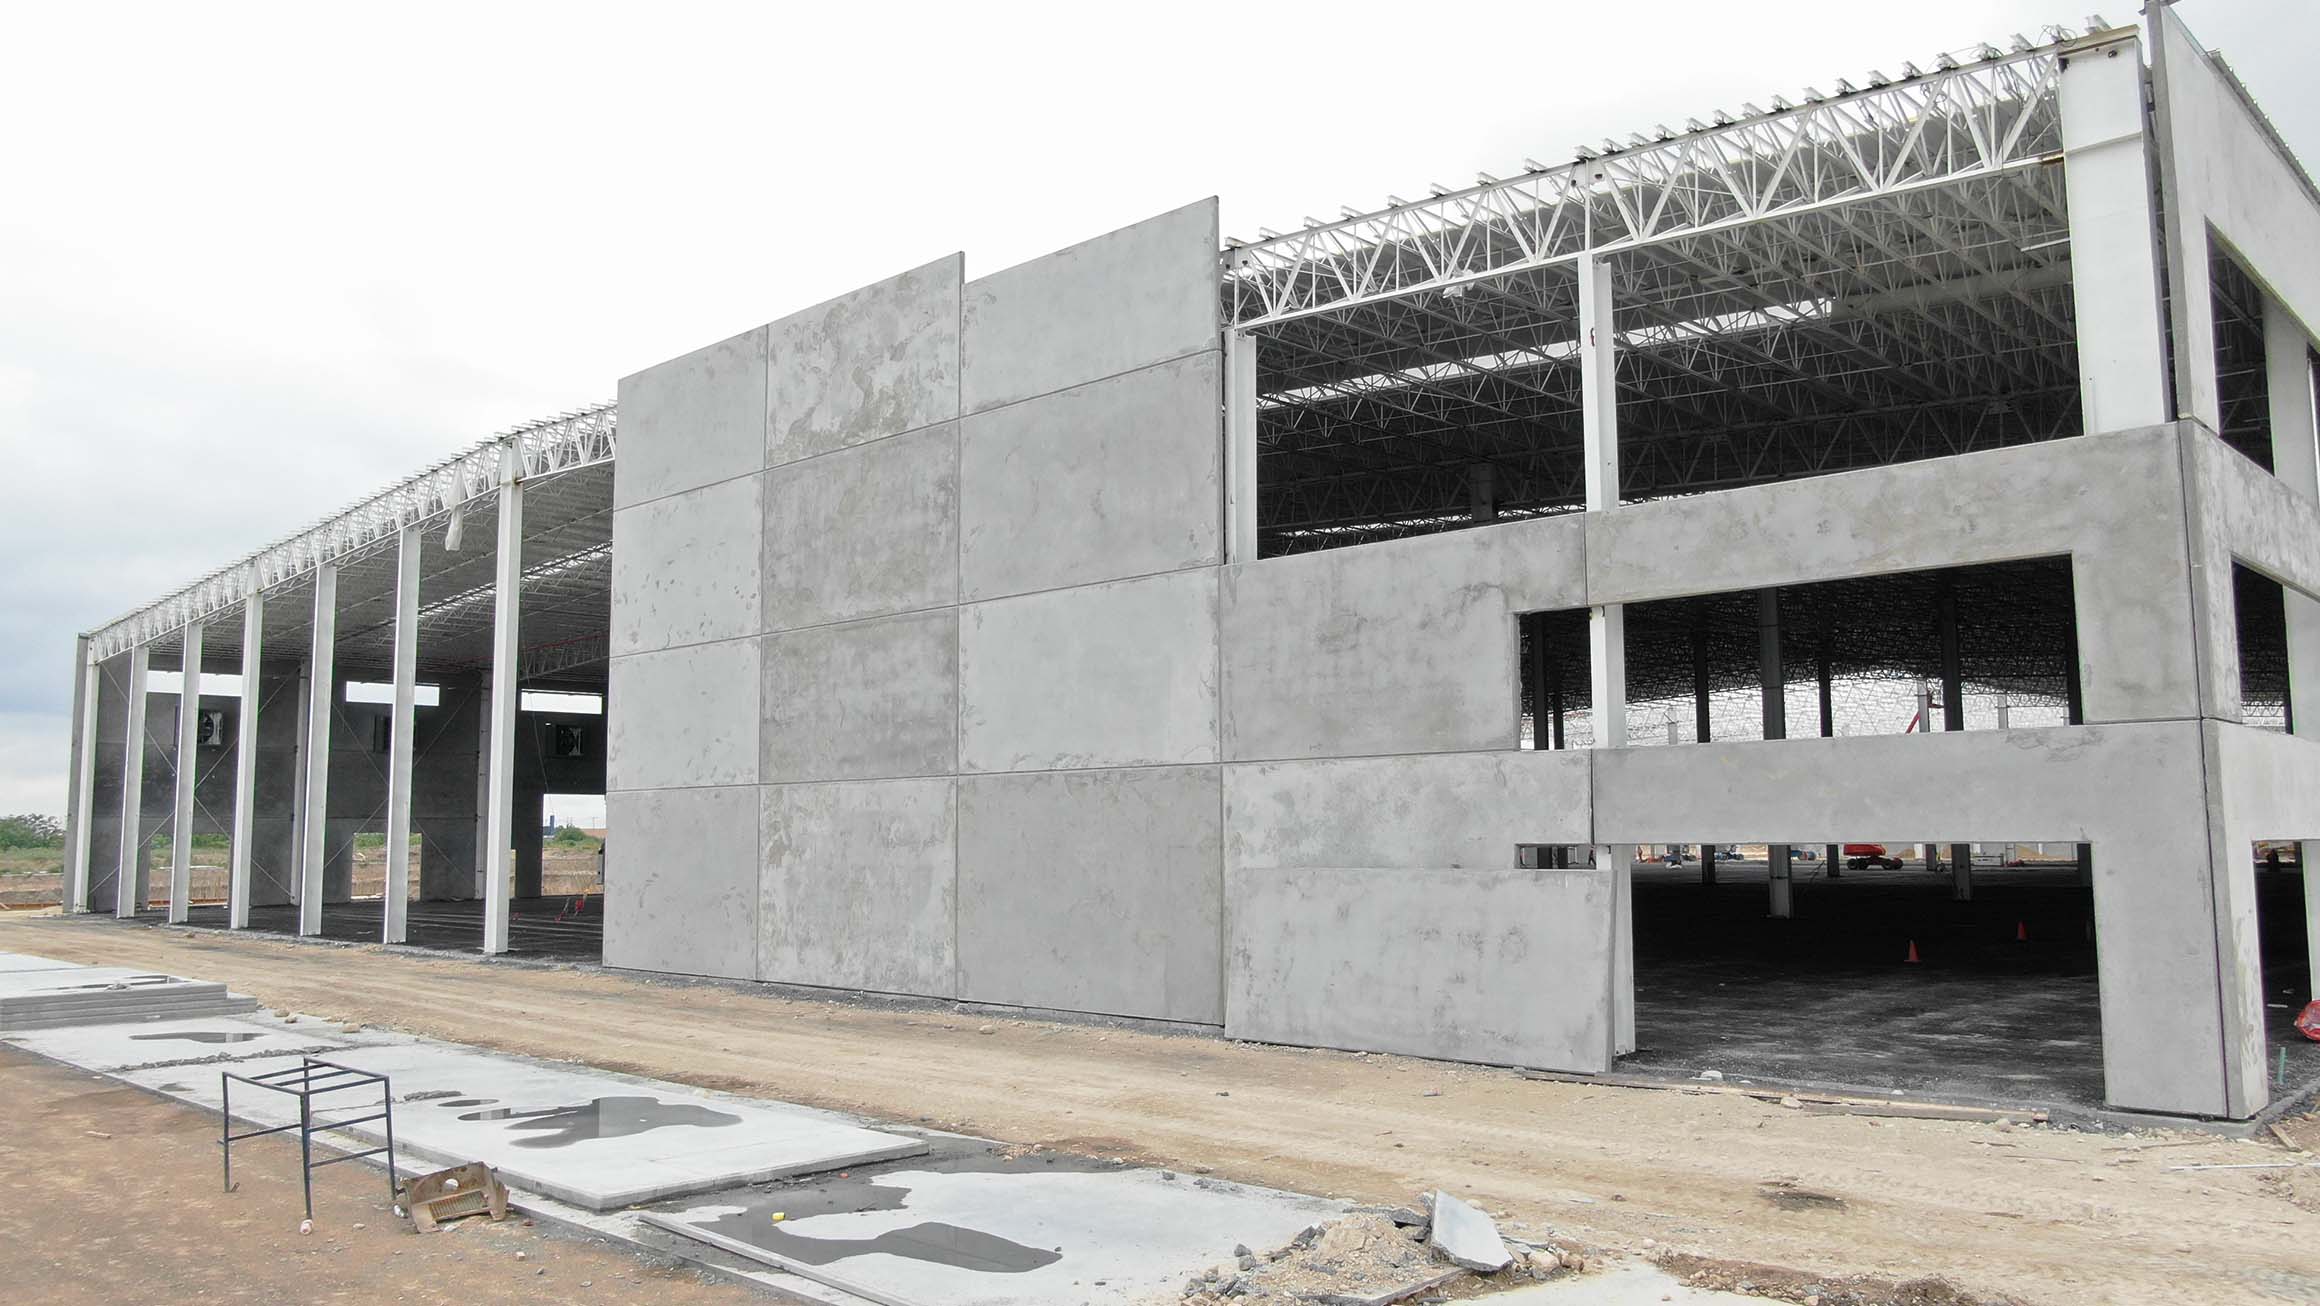 Industrial park building under construction. Concrete panneling